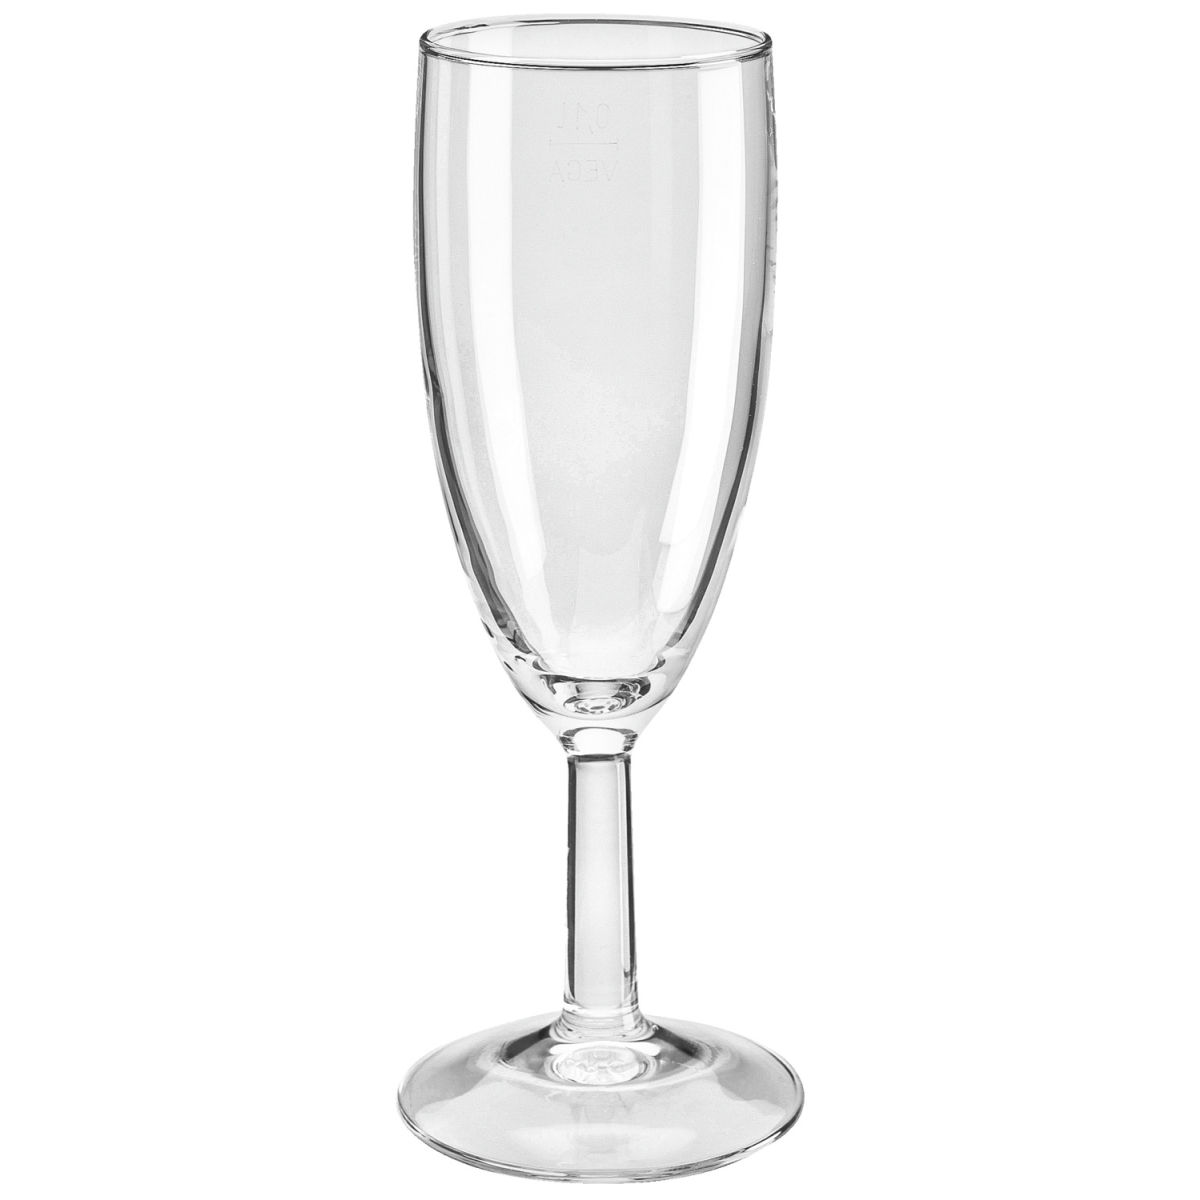 Vega Champagneglas Niki zonder vulstreepje; 160ml, 5.1x15.7 cm (ØxH); transparant; 12 stuk / verpakking